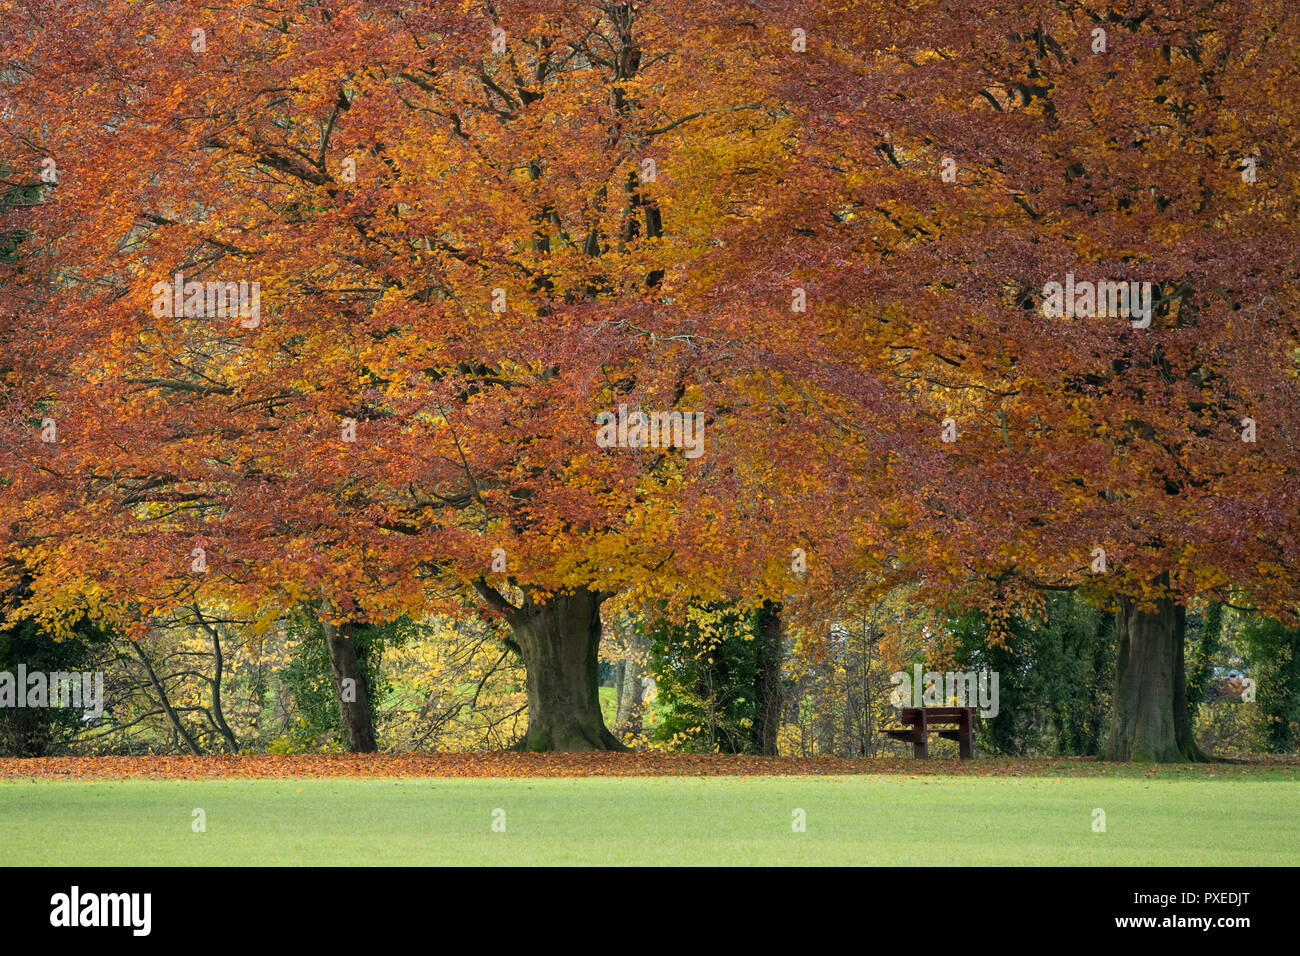 Ligne de propagation, d'énormes hêtres automne riche affichage couleurs cuivre orange - par Riverside Park, Ilkley, Ilkley, West Yorkshire, Angleterre, Royaume-Uni. Banque D'Images